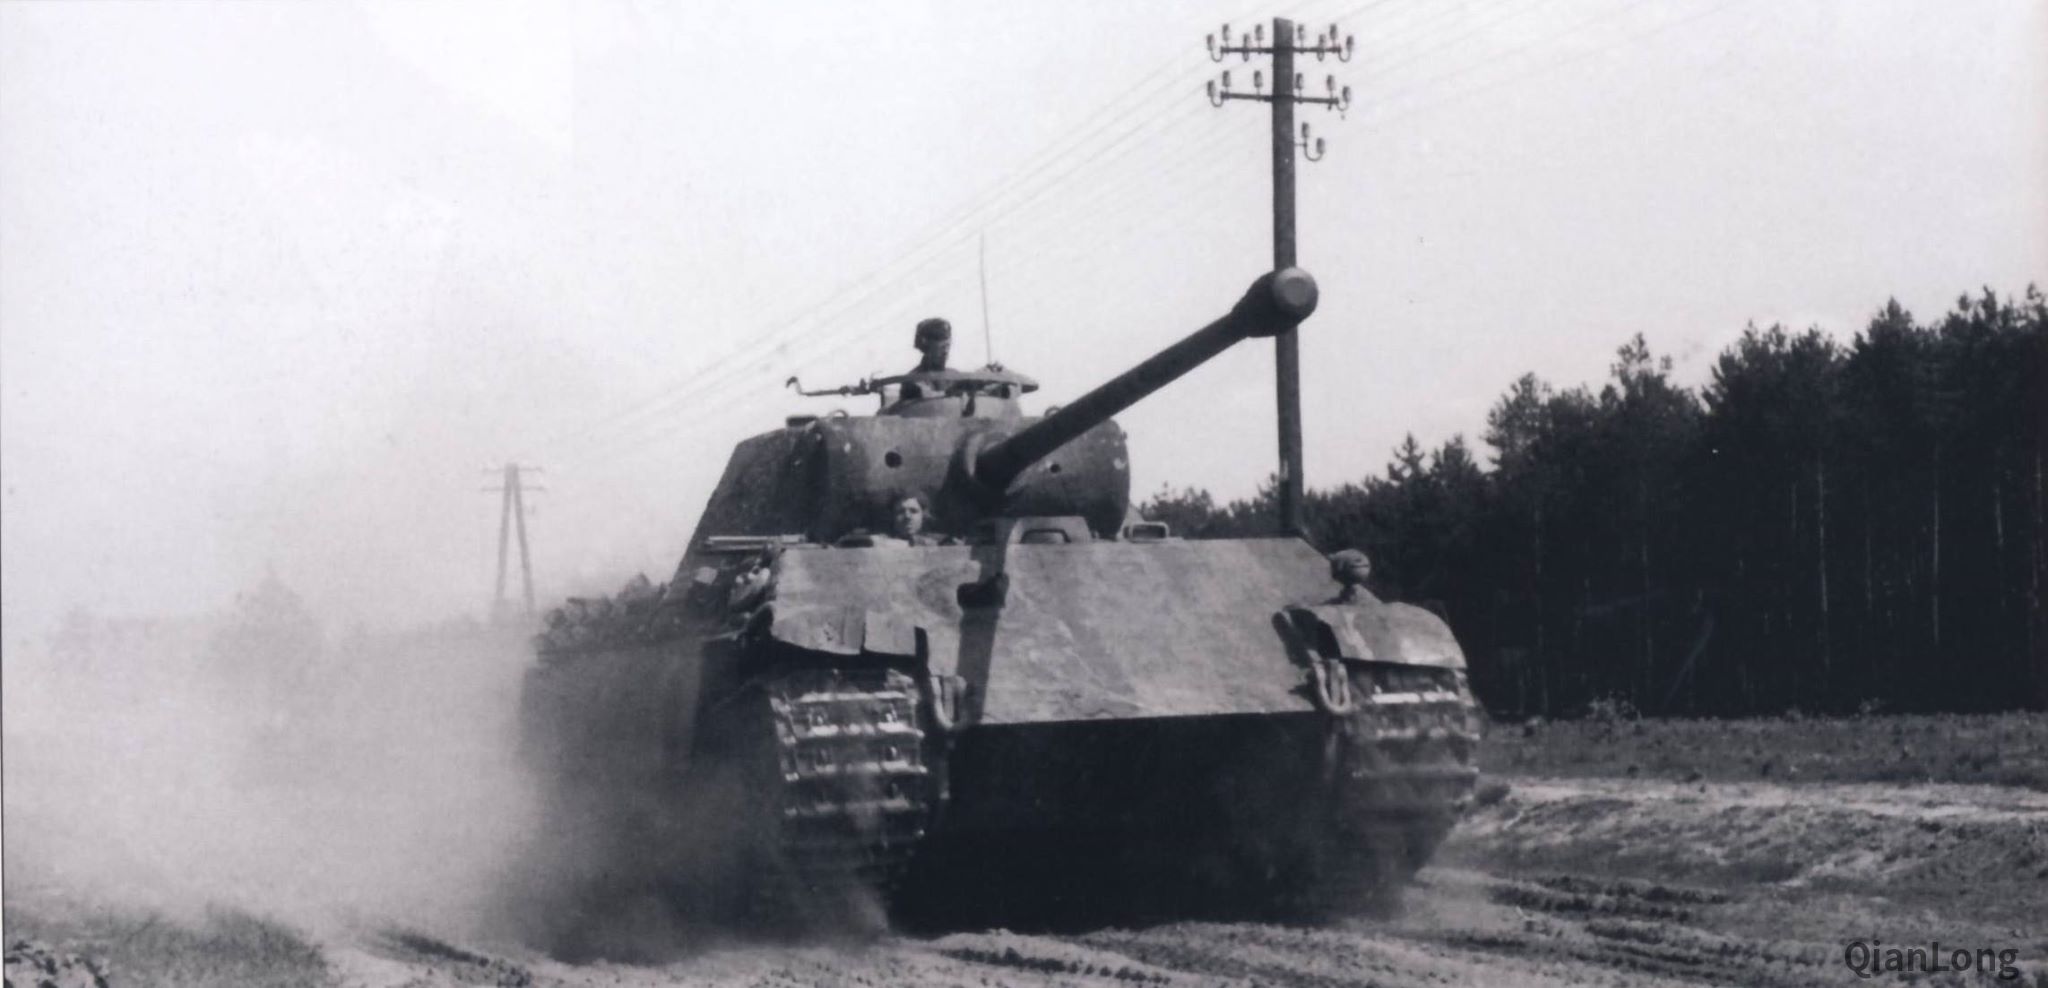 奔向华沙的德军"黑豹"中型坦克任务:镇压华沙起义